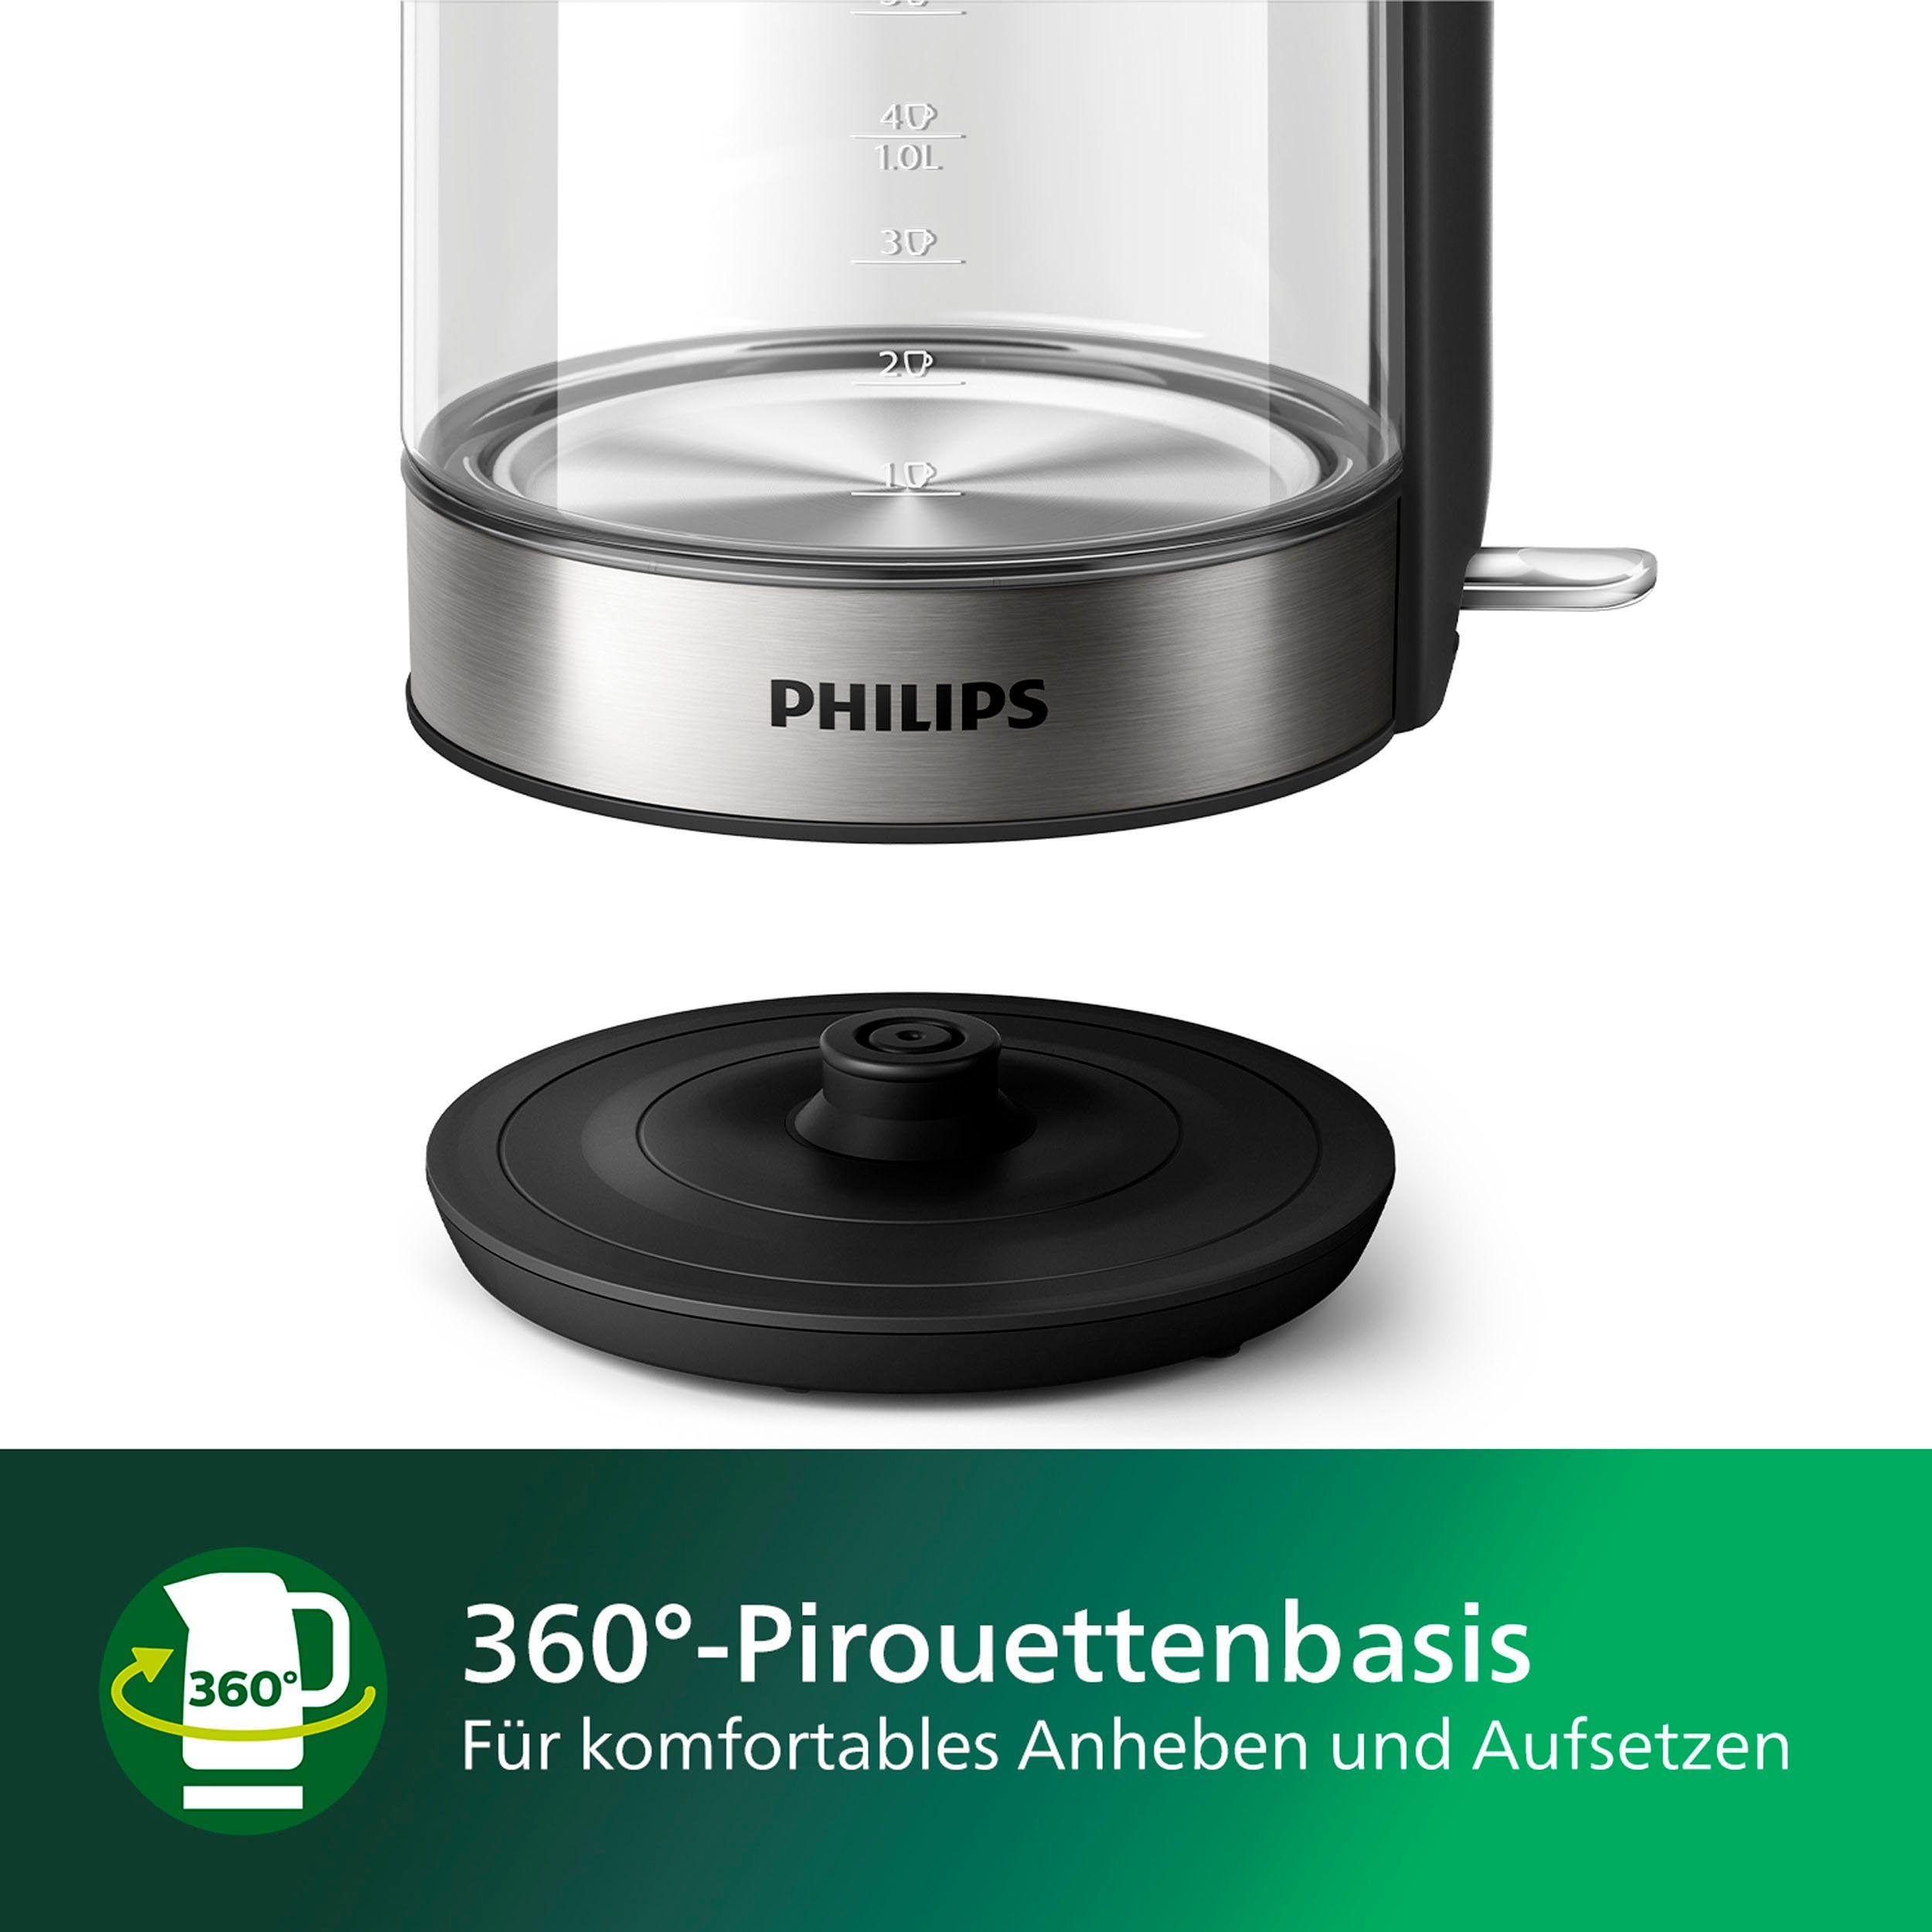 Philips Wasserkocher Series 5000 l, 2200 W 1,7 HD9339/80